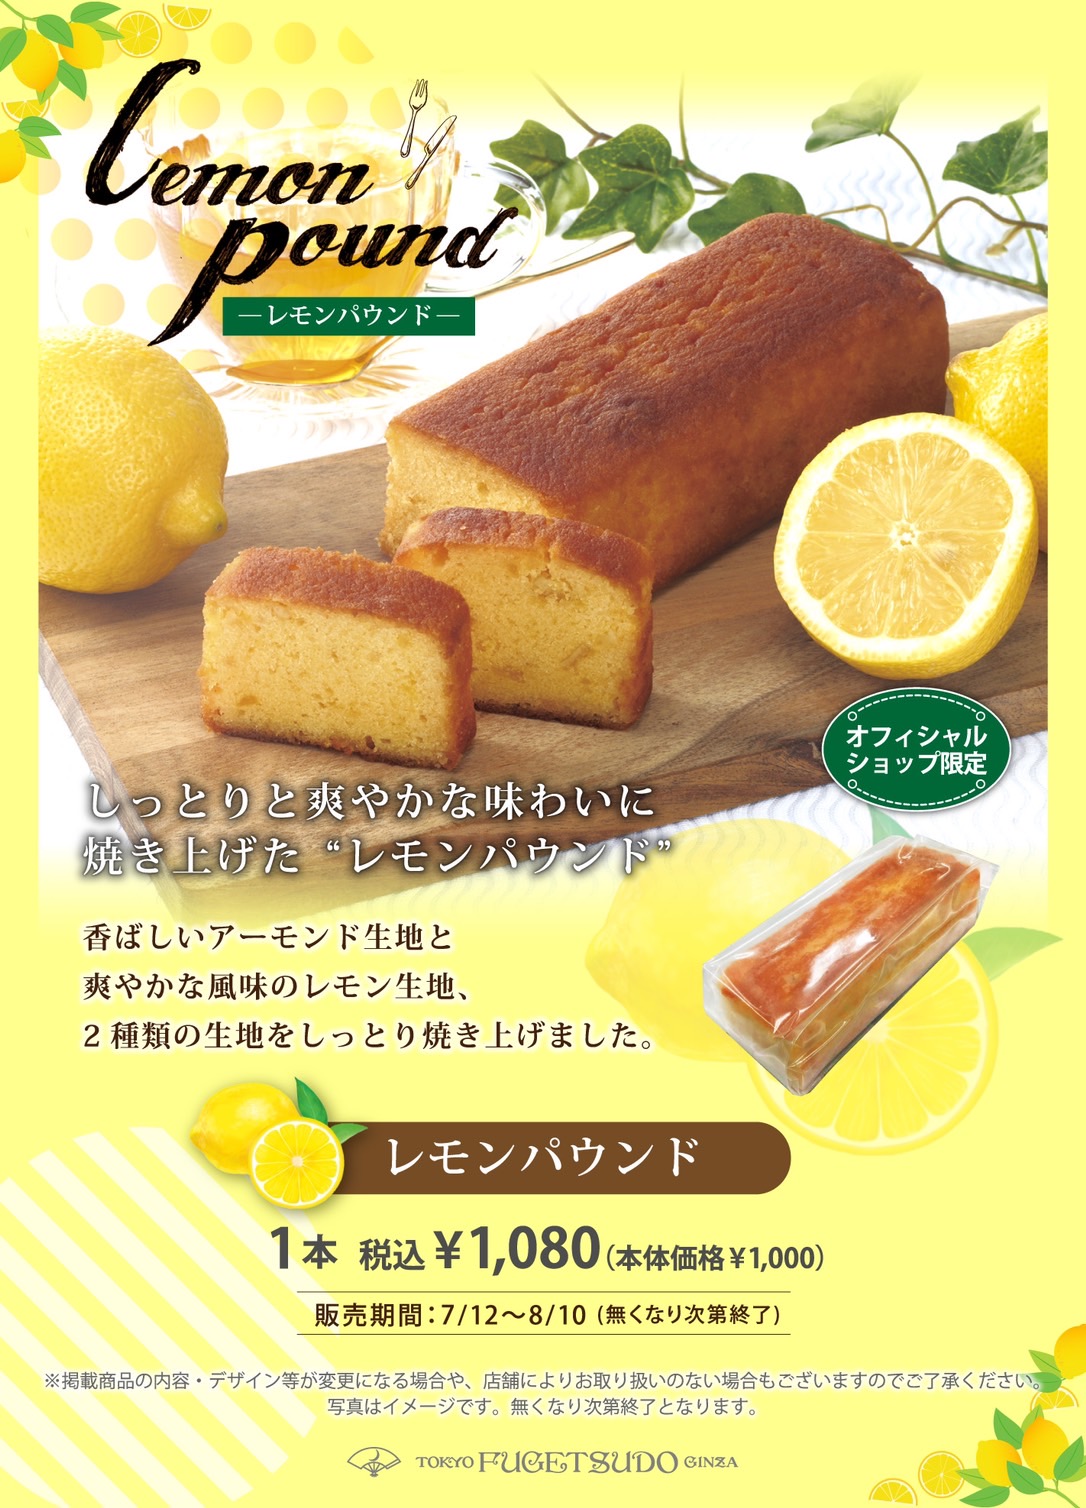 香ばしいアーモンド生地と爽やかな風味のレモン生地、2種類の生地をしっとり焼き上げました。オフィシャルショップ限定の商品です。本体価格¥1,000（税込¥1,080）